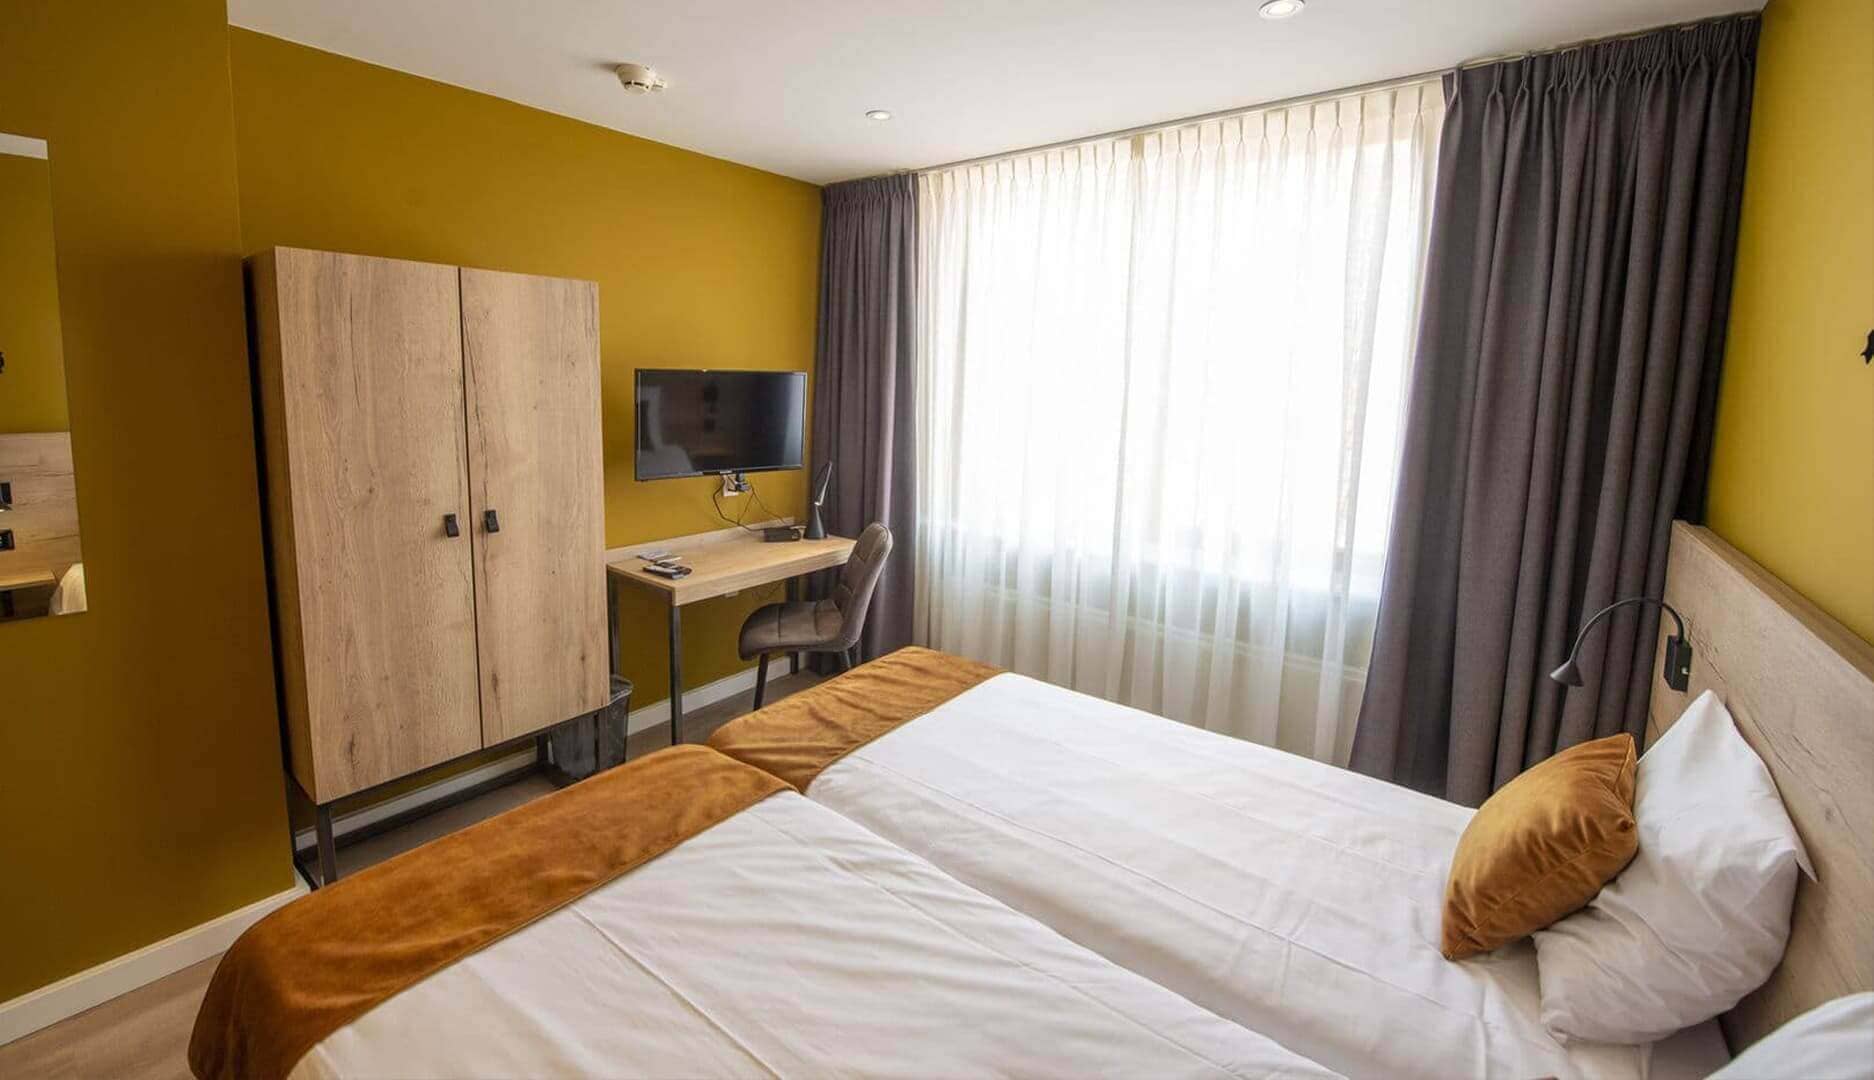 Overzichtsfoto Comfort tweepersoonskamer bij het hotel in drenthe